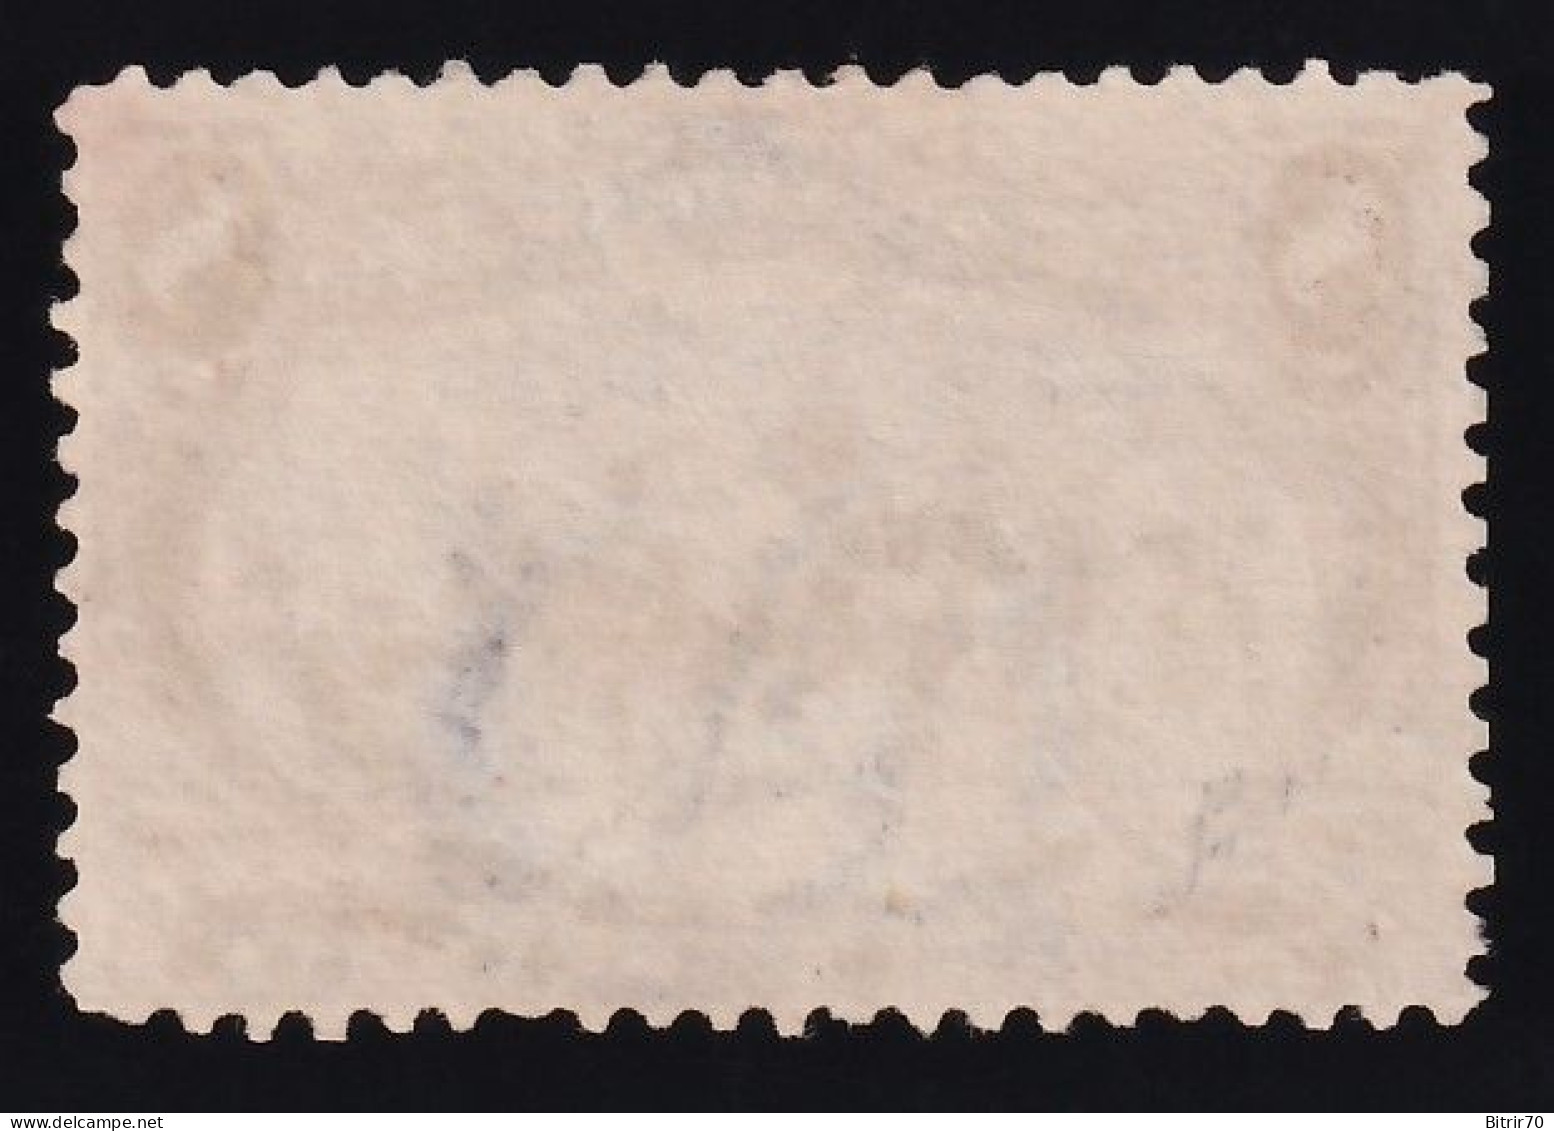 Estados Unidos, 1898  Y&T. 133.  (*), 8 C. Marrón-lila - Nuevos